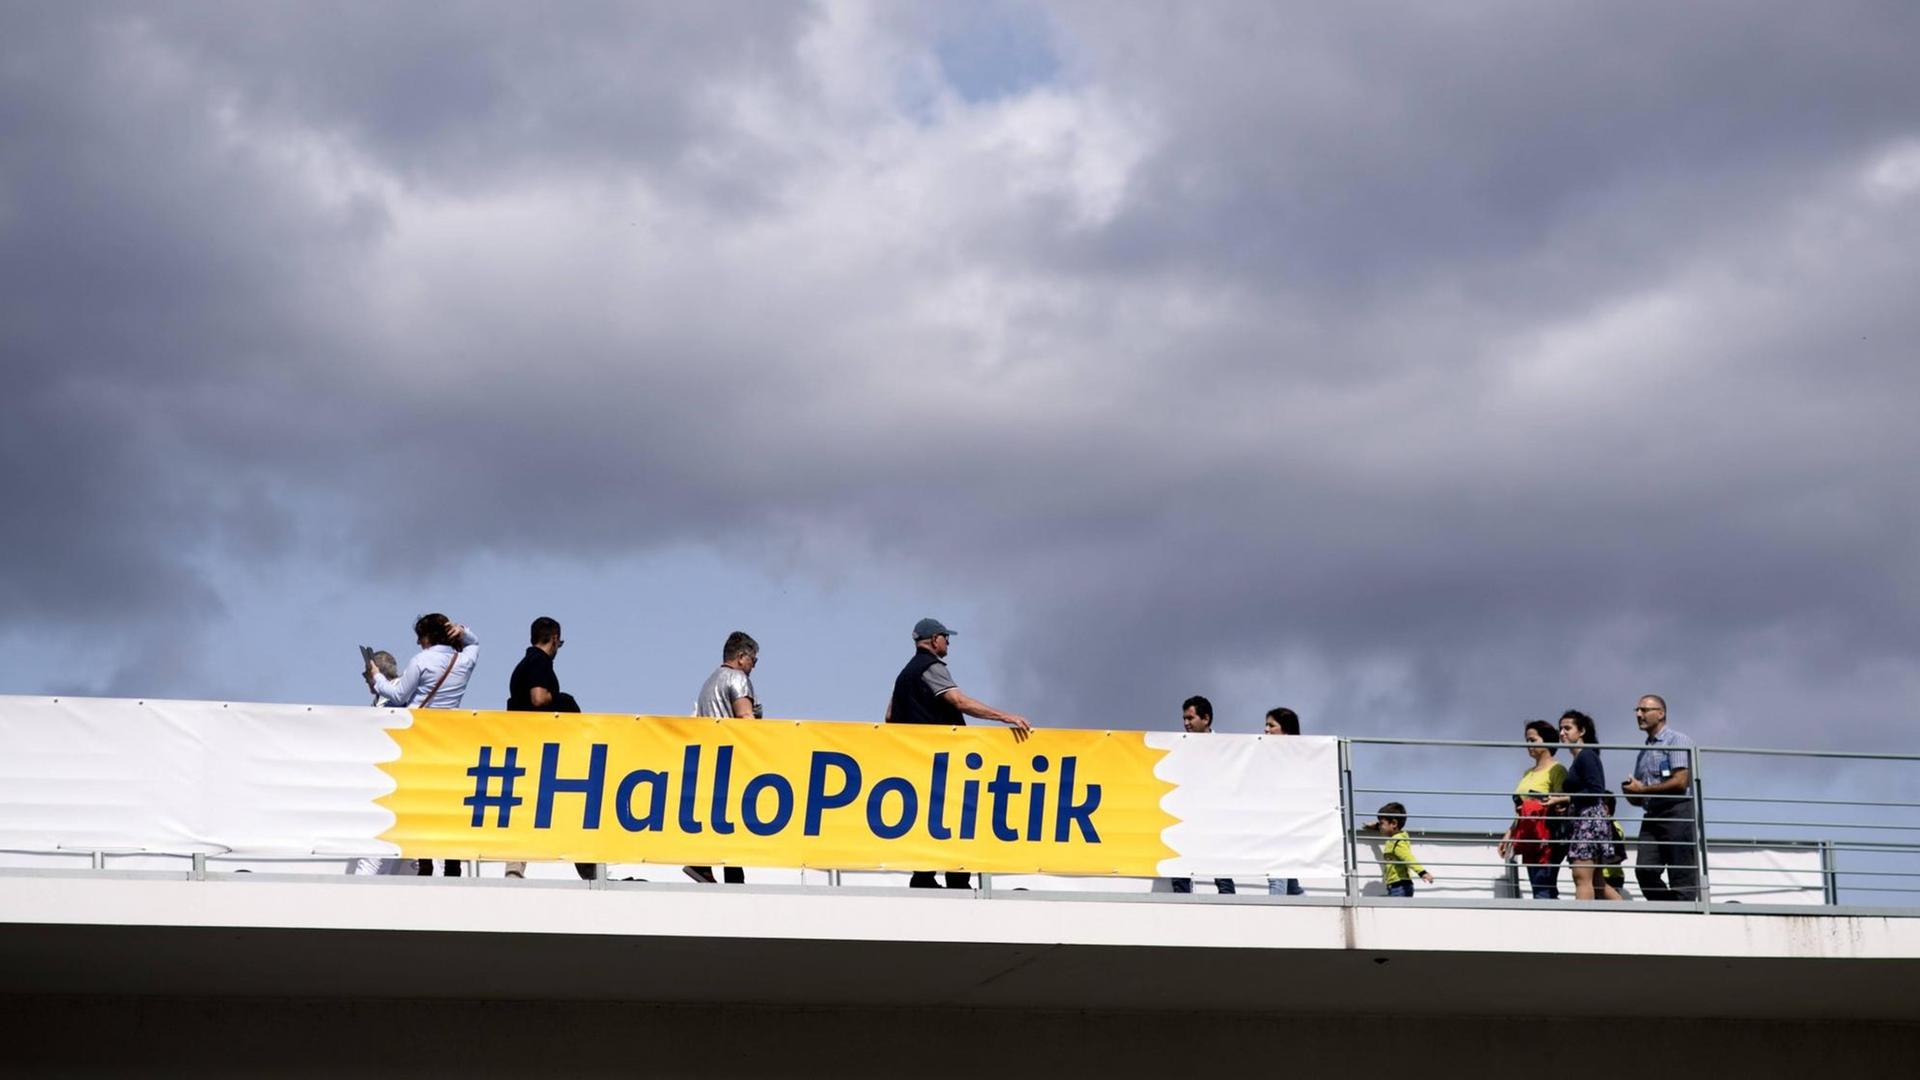 Besucher auf dem Bundeskanzleramt in Berlin am Tag der offenen Tür am 26. August 2018. Davor eine Banner mit #HalloPolitik.